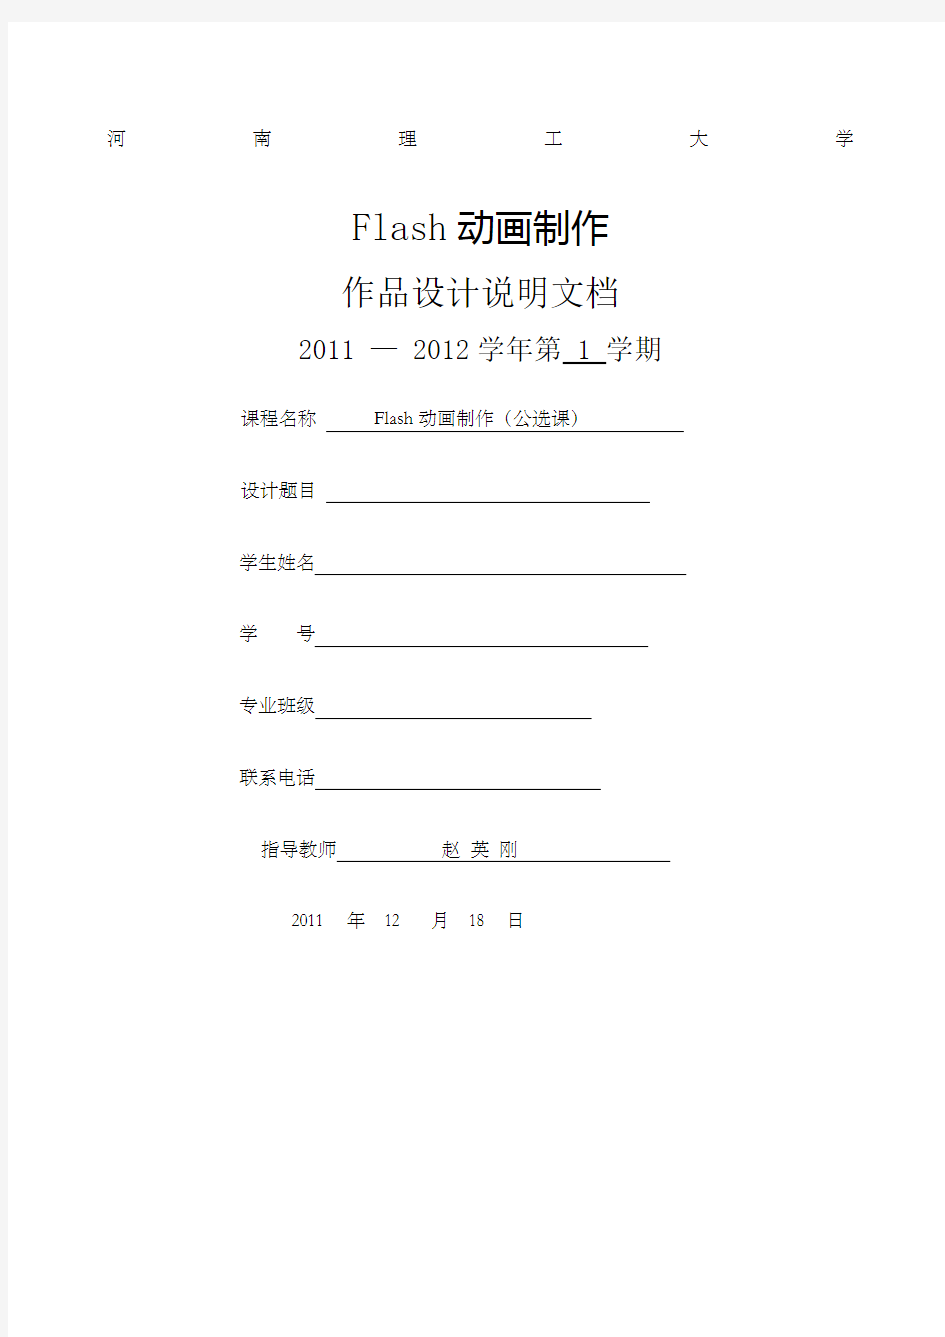 河南理工大学Flash动画制作期末作品设计说明书